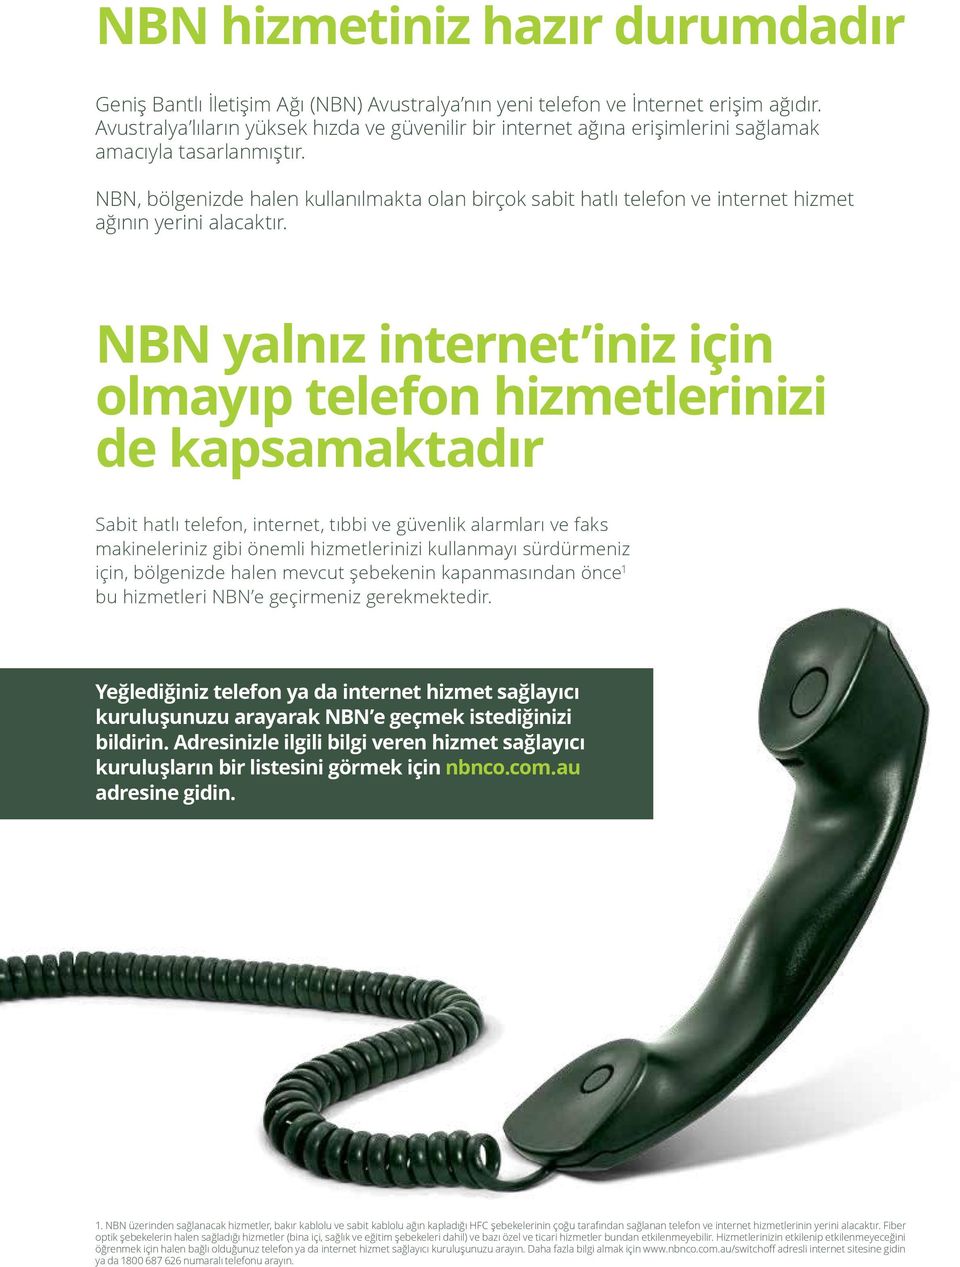 NBN, bölgenizde halen kullanılmakta olan birçok sabit hatlı telefon ve internet hizmet ağının yerini alacaktır.